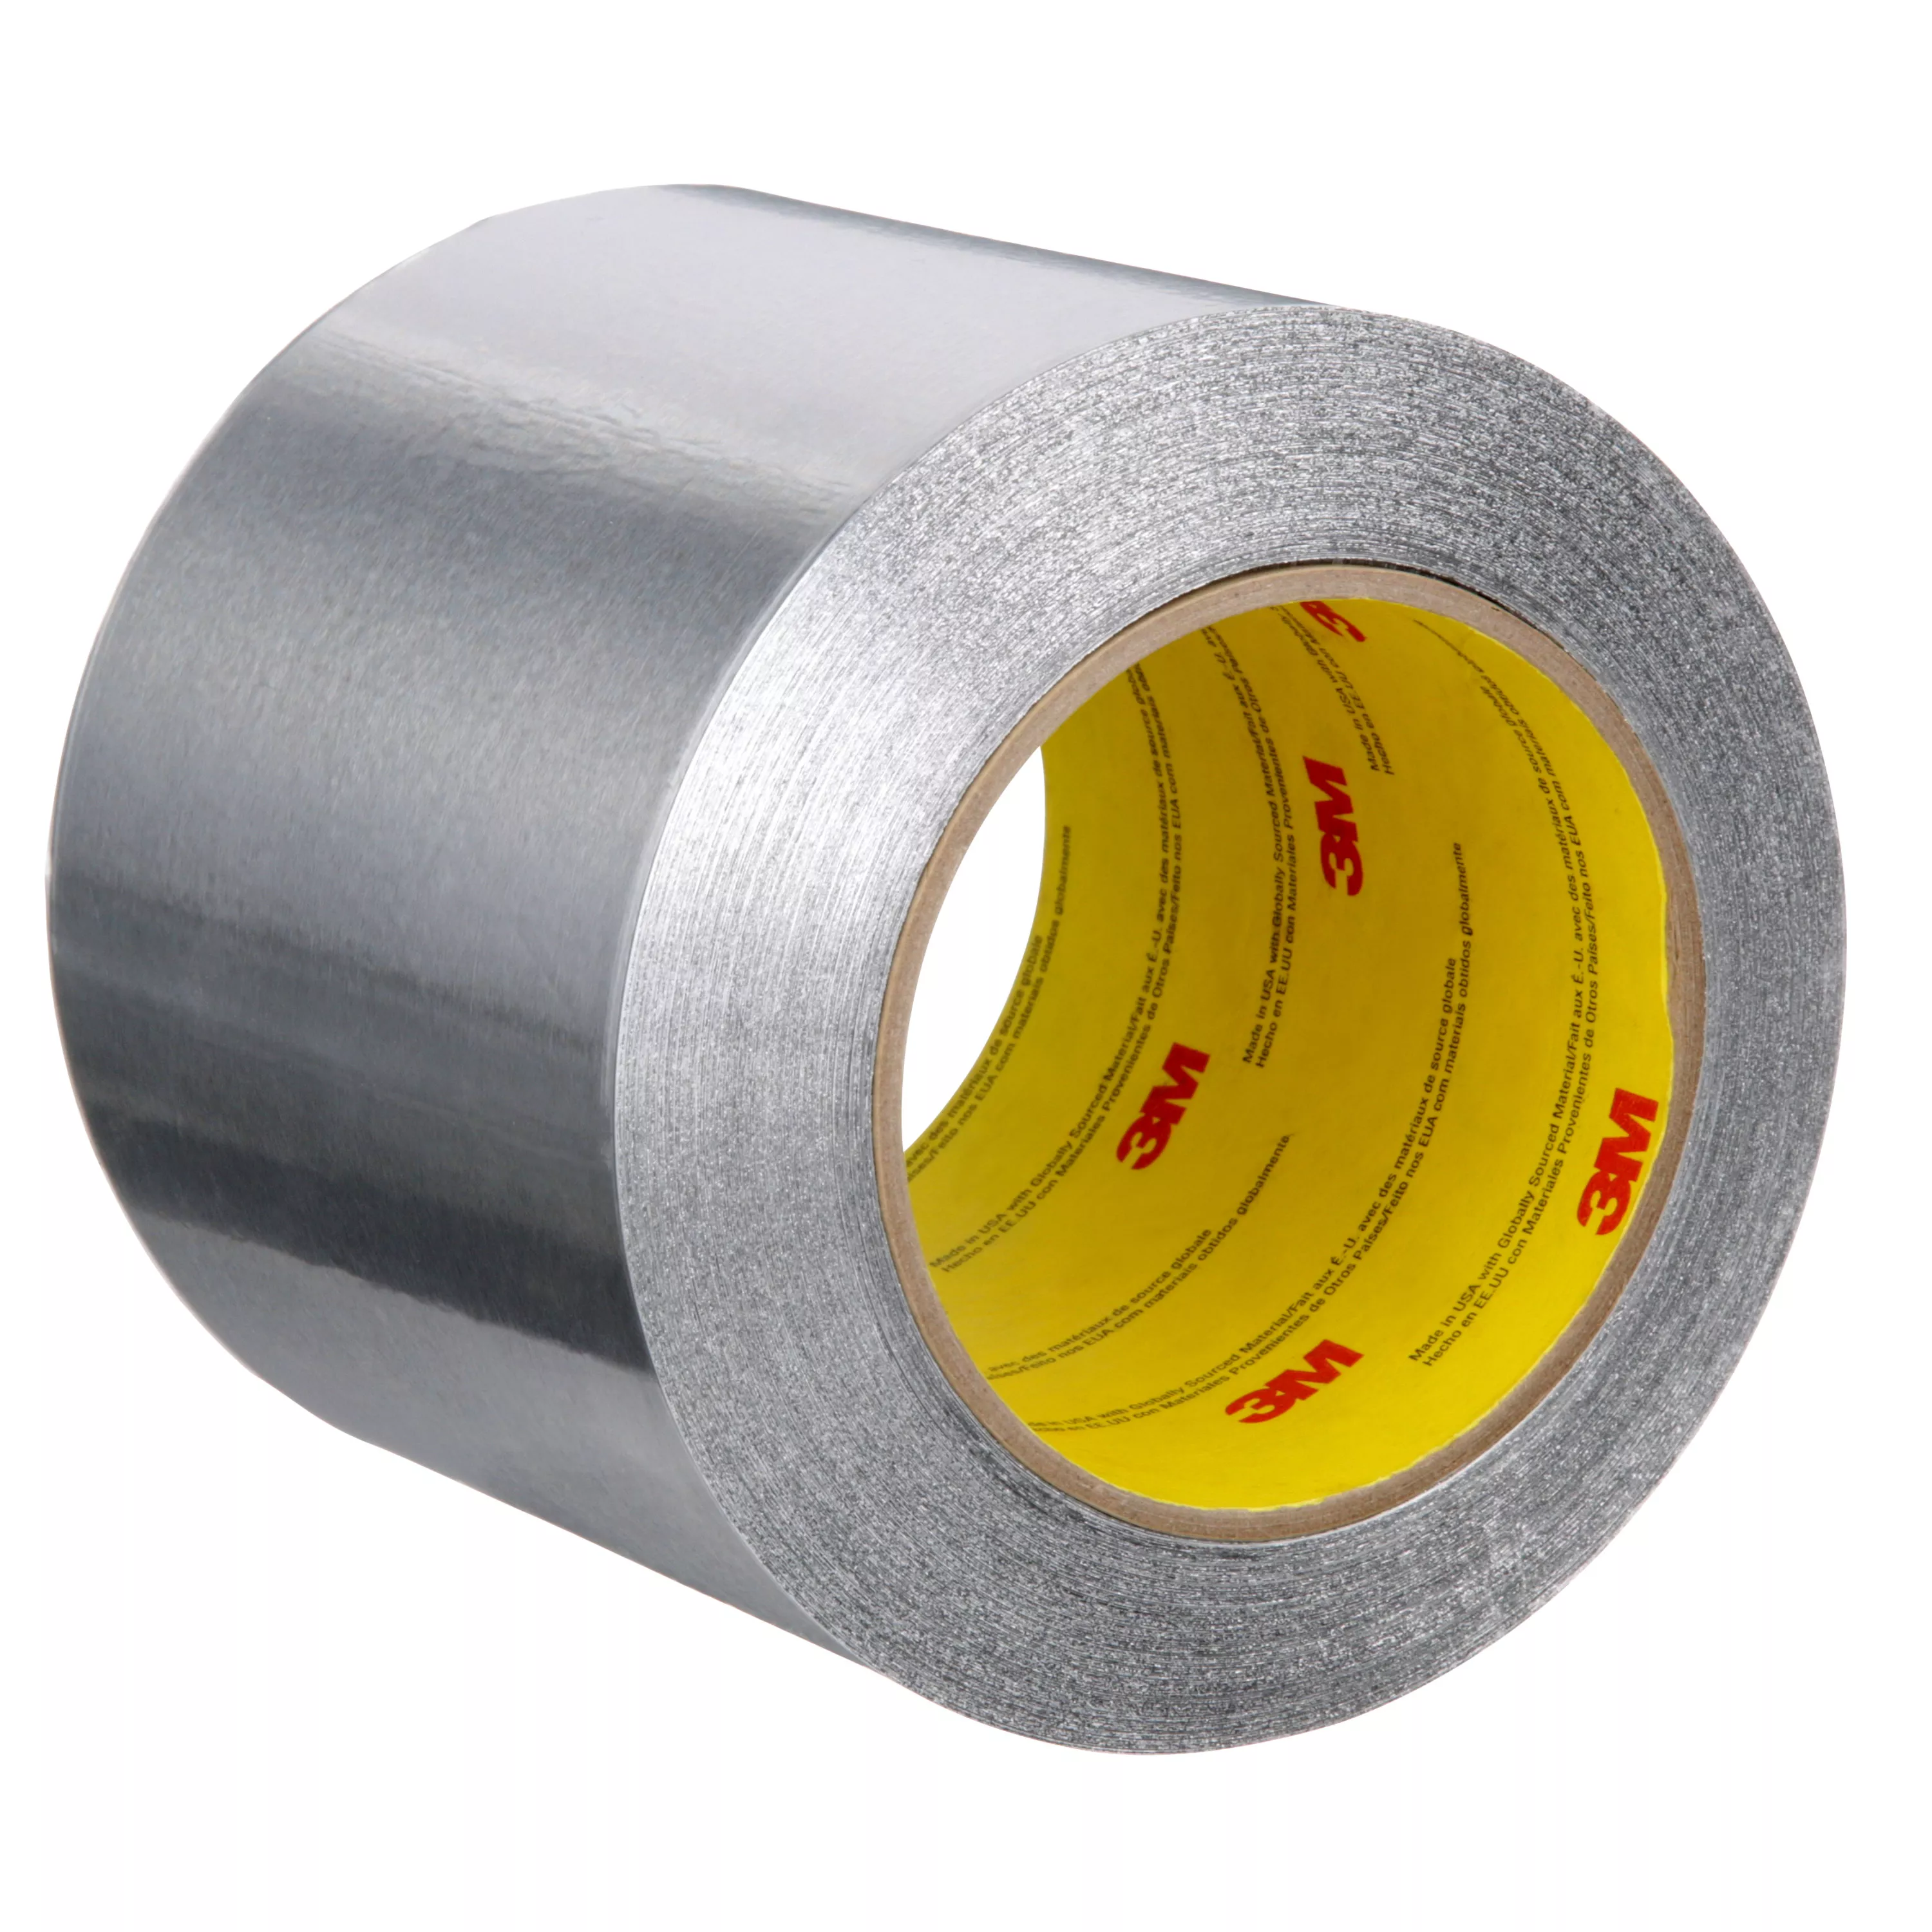 3M™ Aluminum Foil Tape 425 LT80, Silver, 4 in x 60 yd, 4.6 mil, 12 rolls
per case